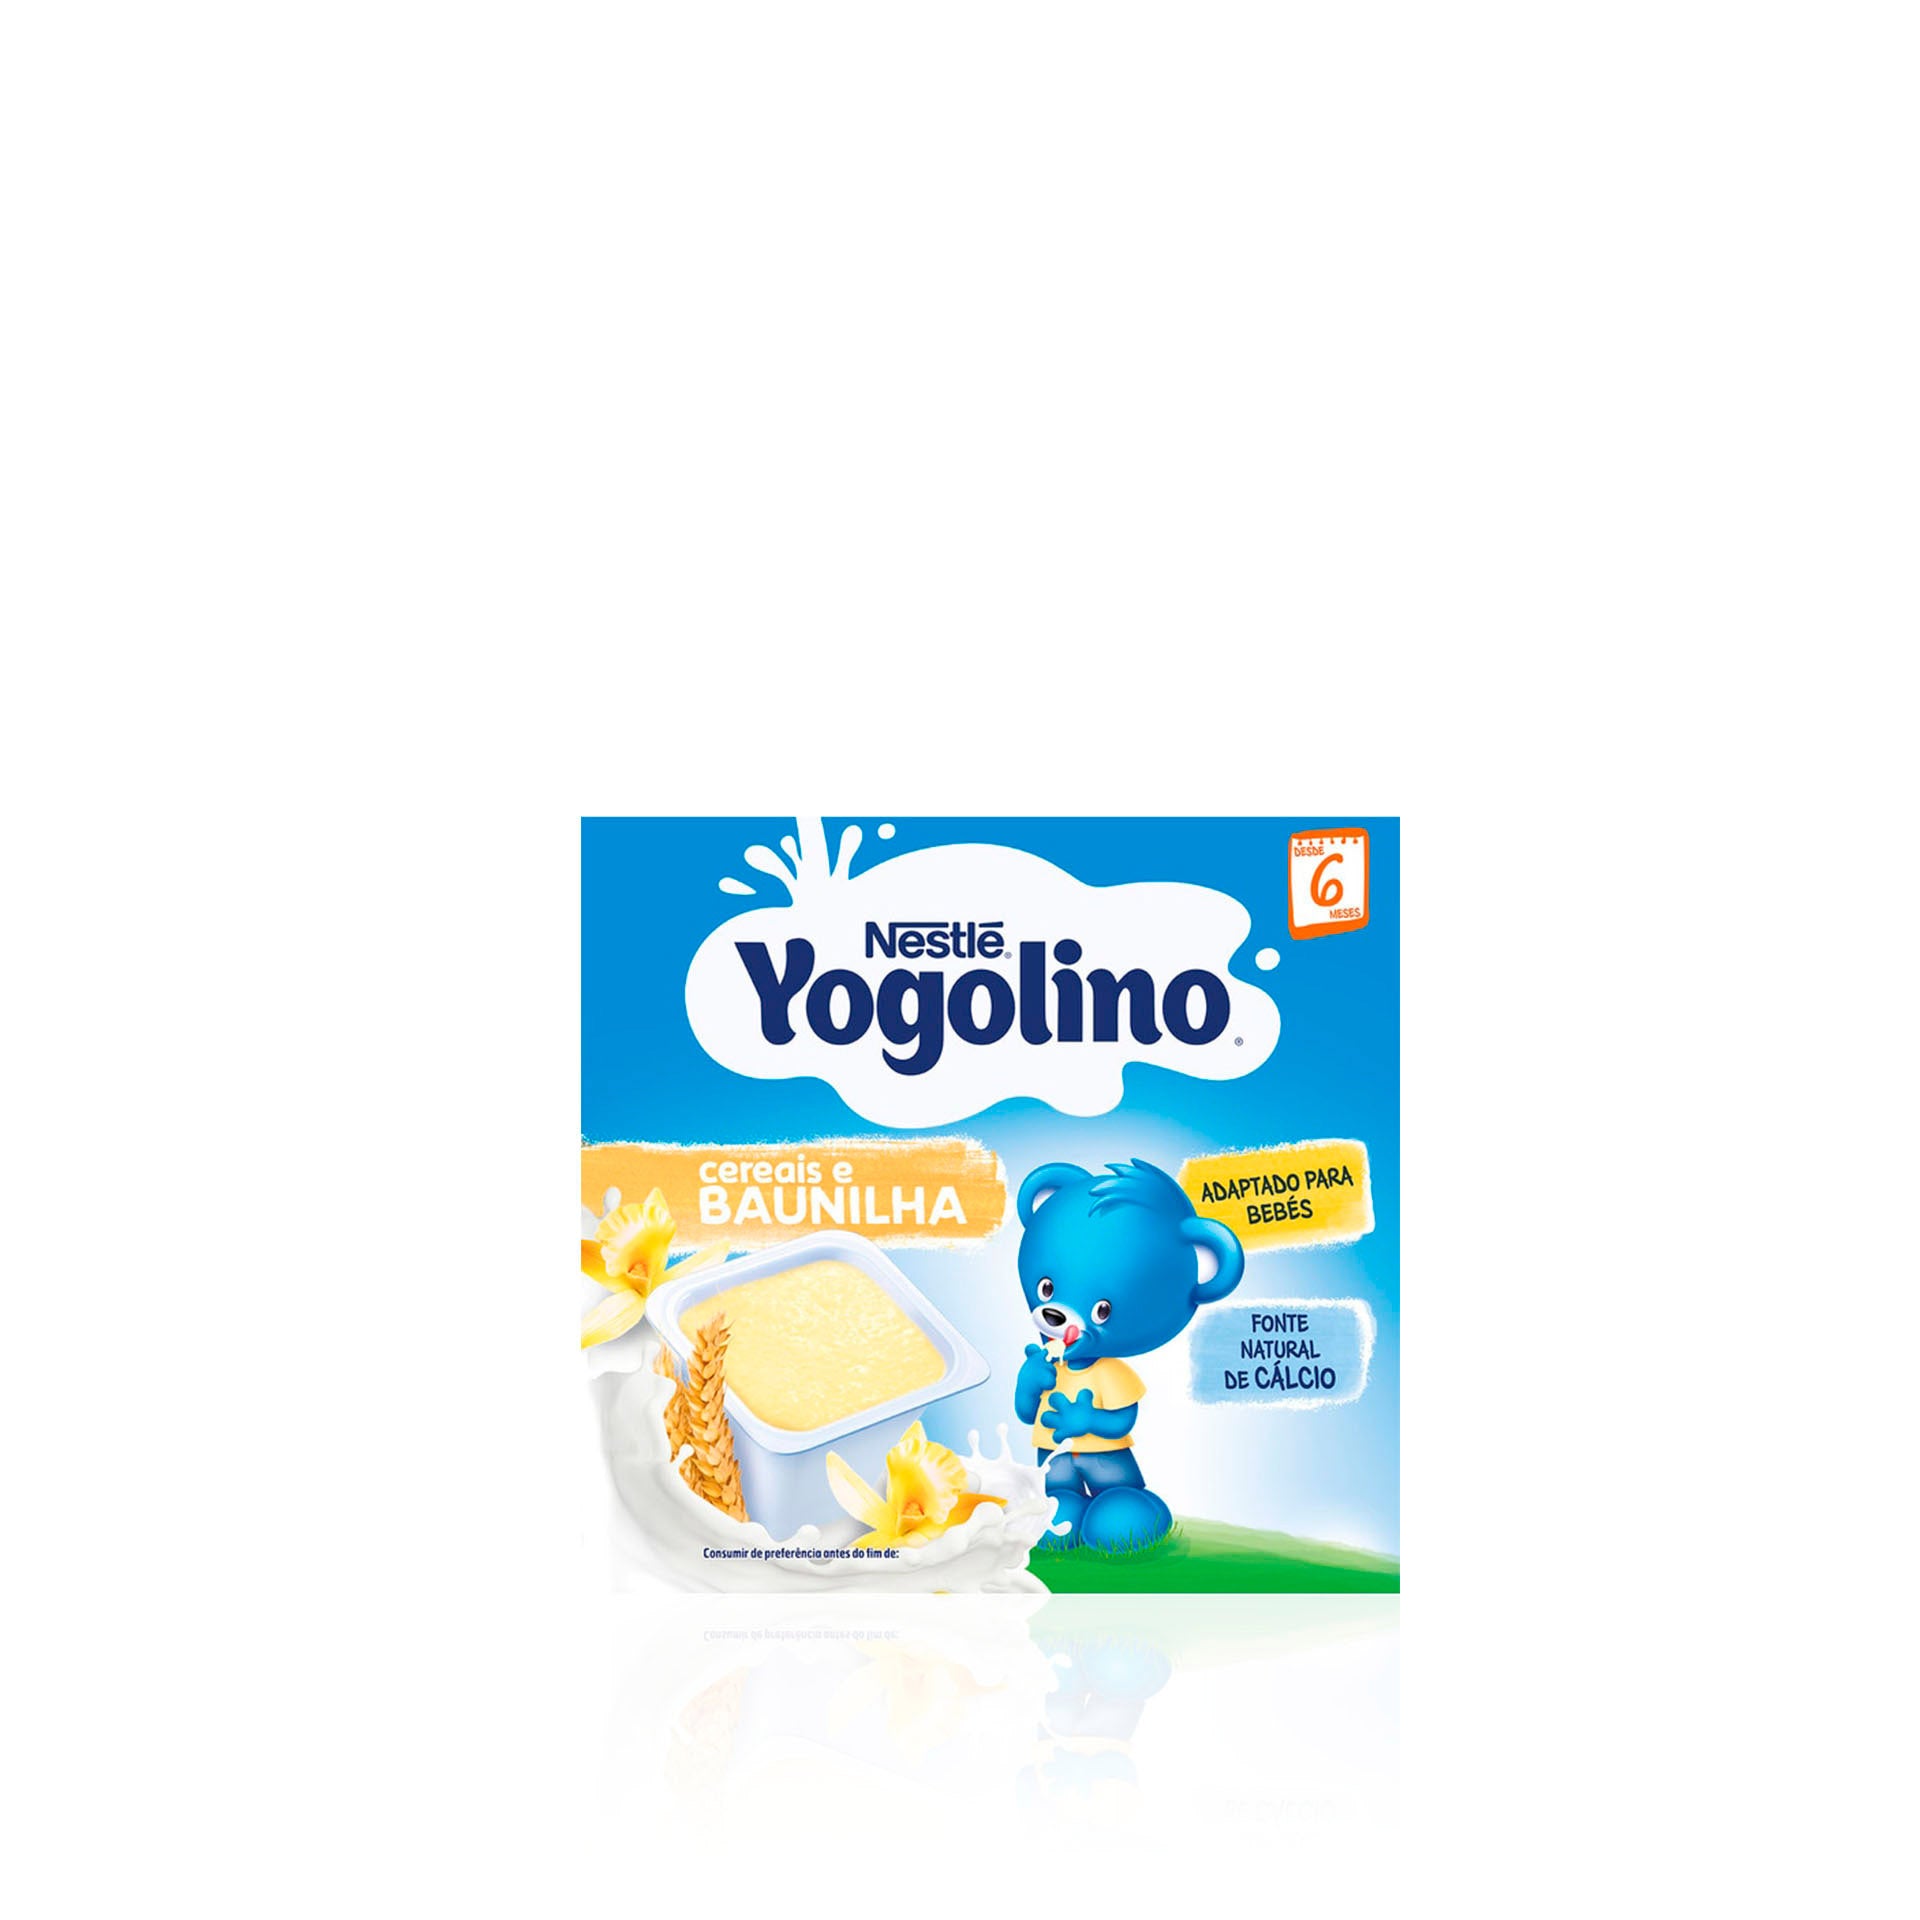 Nestlé Yogolino Cereais e Baunilha (+6 meses) Pack 4 x 100 gr